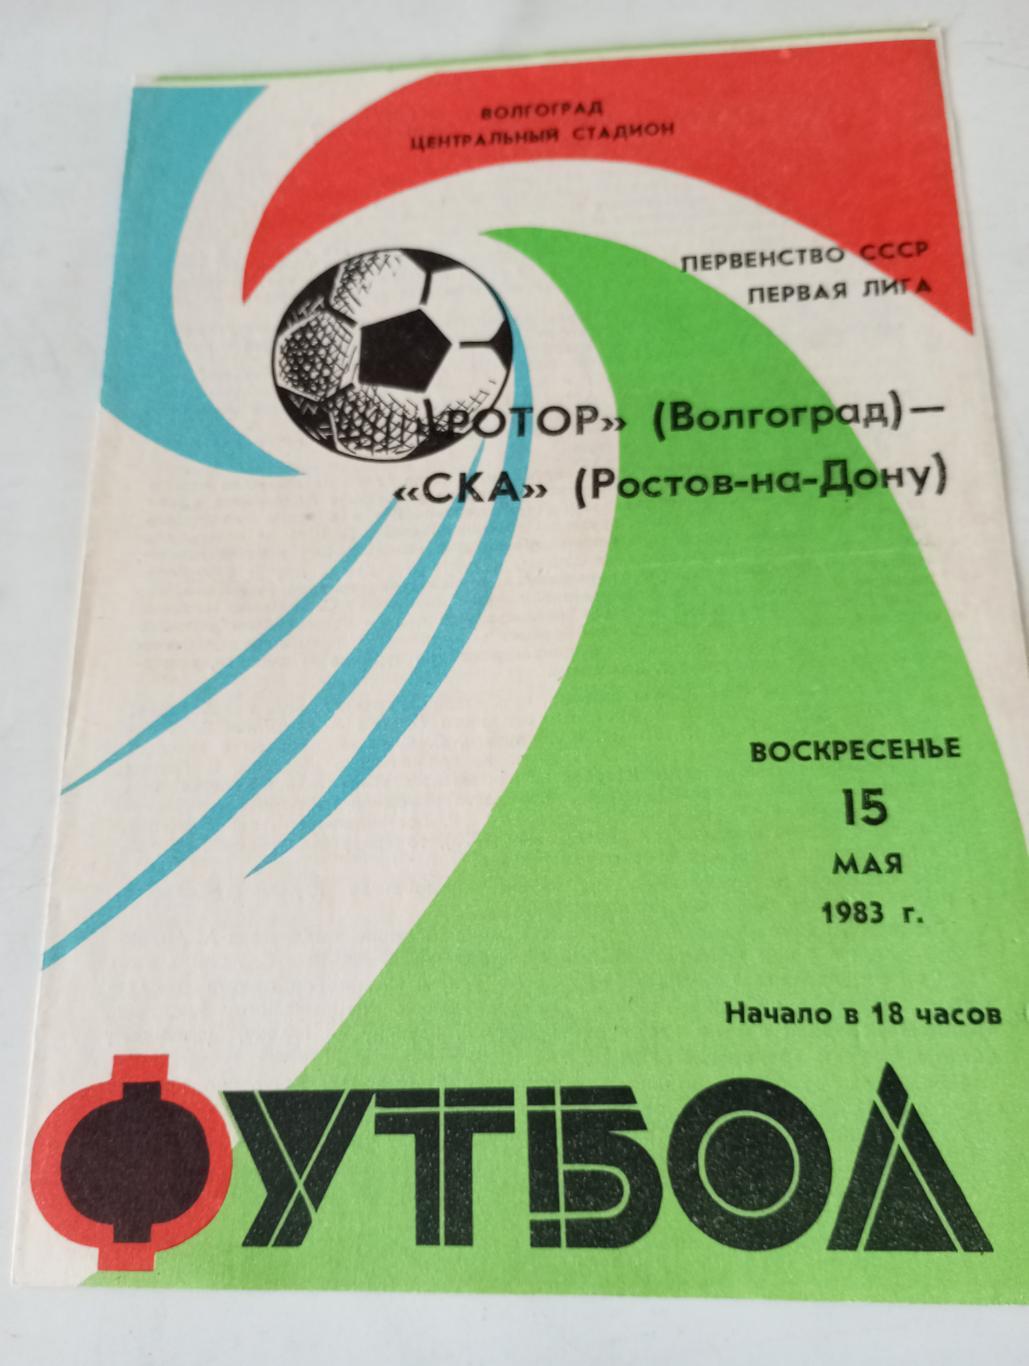 Ротор(Волгоград) - СКА(Ростов на Дону). 1983